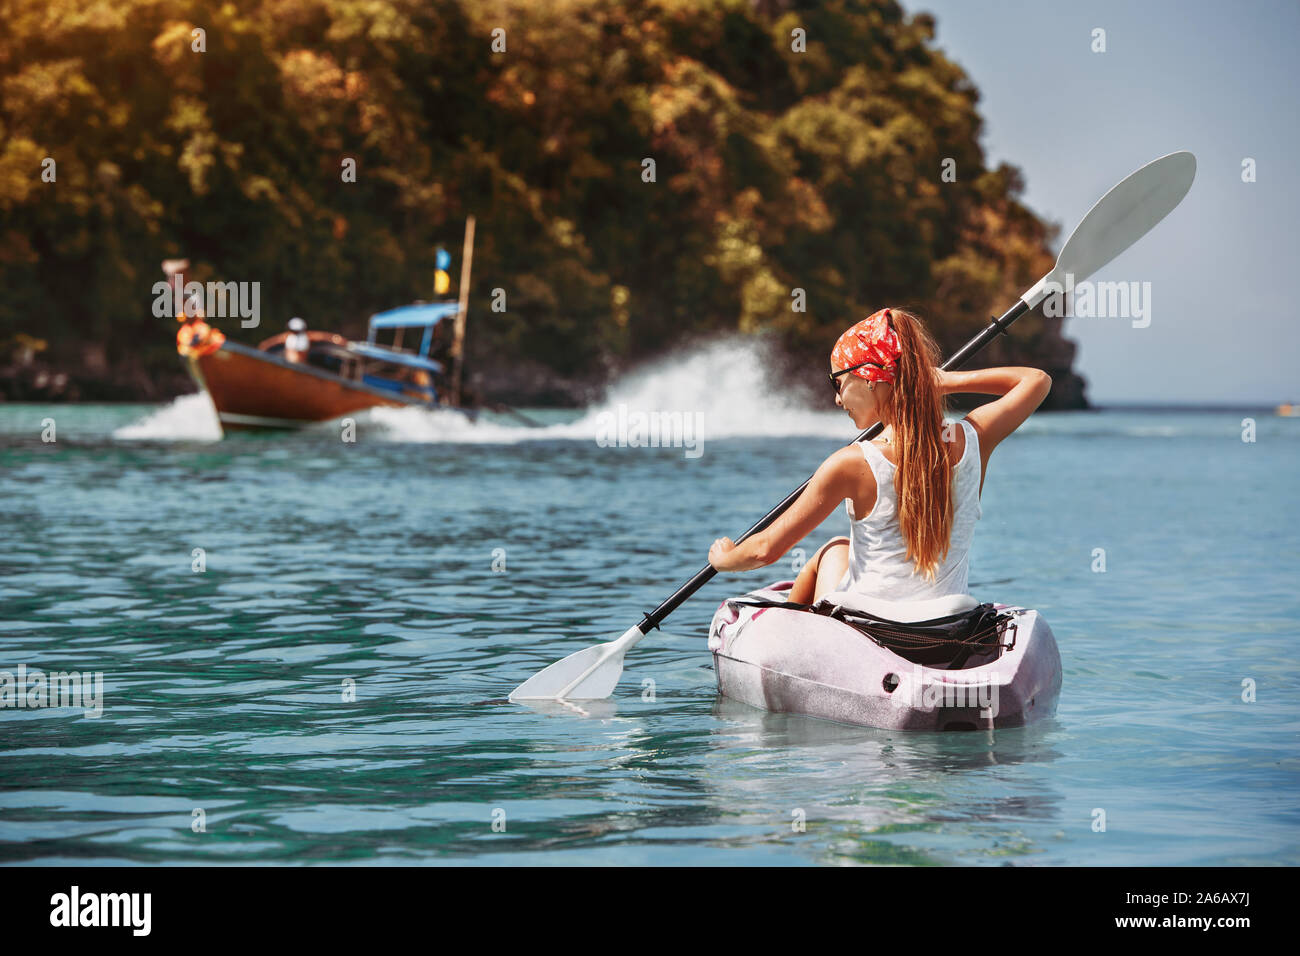 La baie de la mer, bateau thaï et de la jeune fille marche sur kayak Banque D'Images